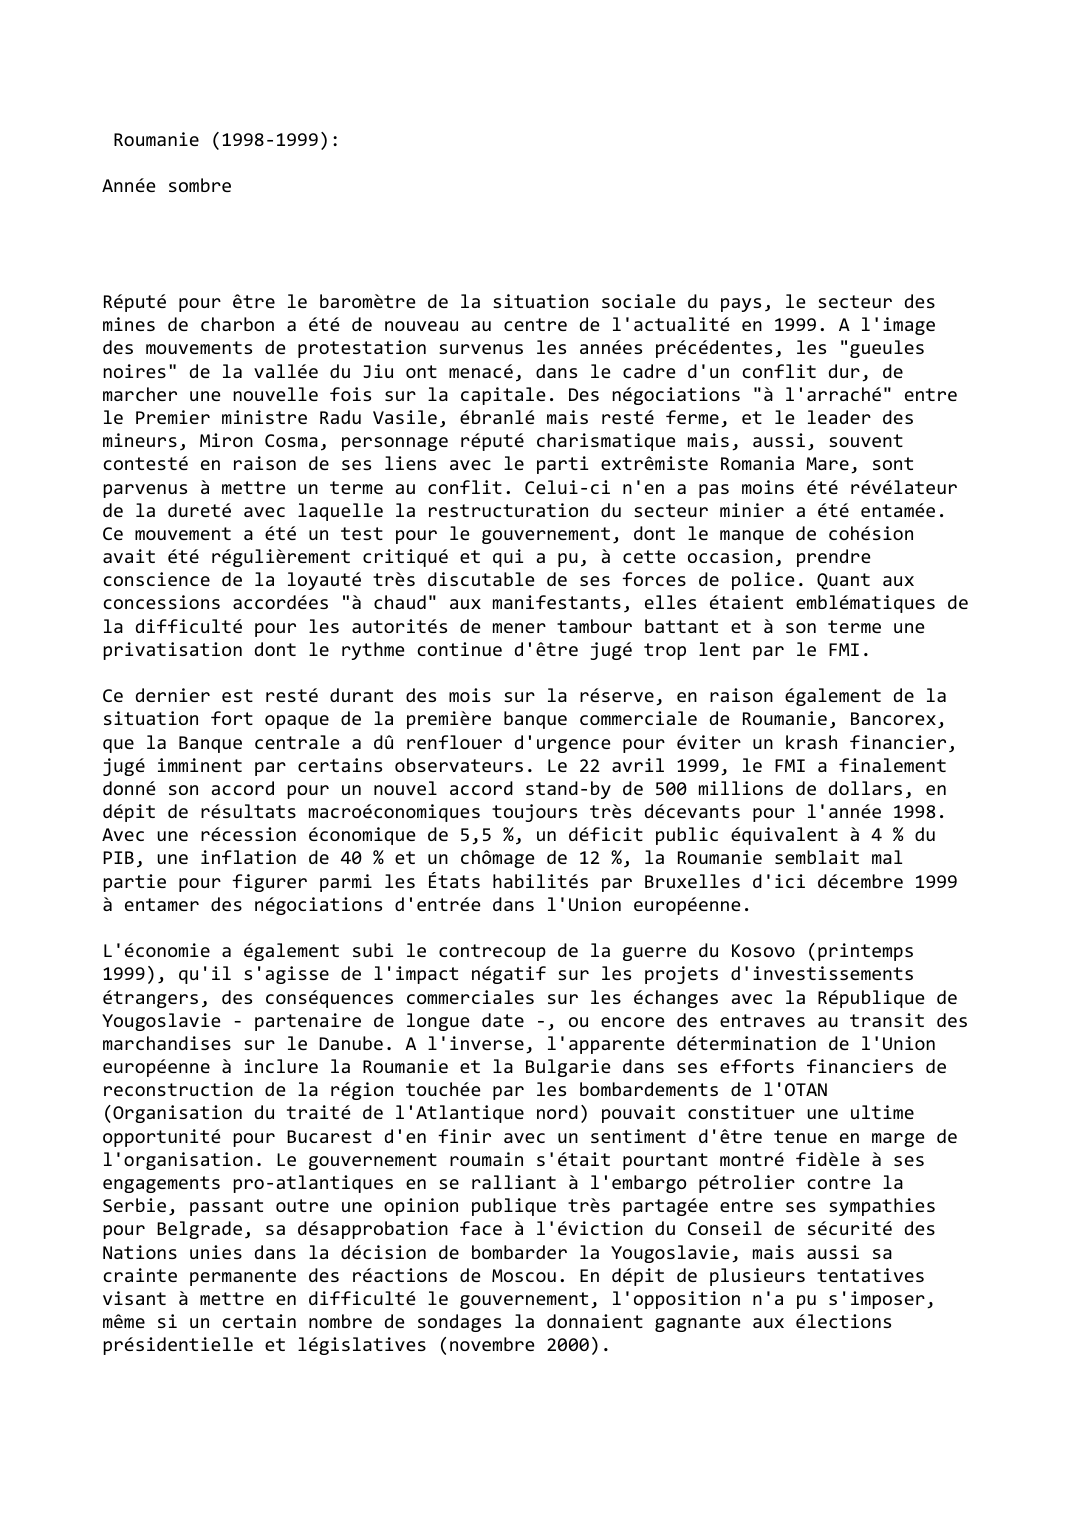 Prévisualisation du document Roumanie (1998-1999):

Année sombre